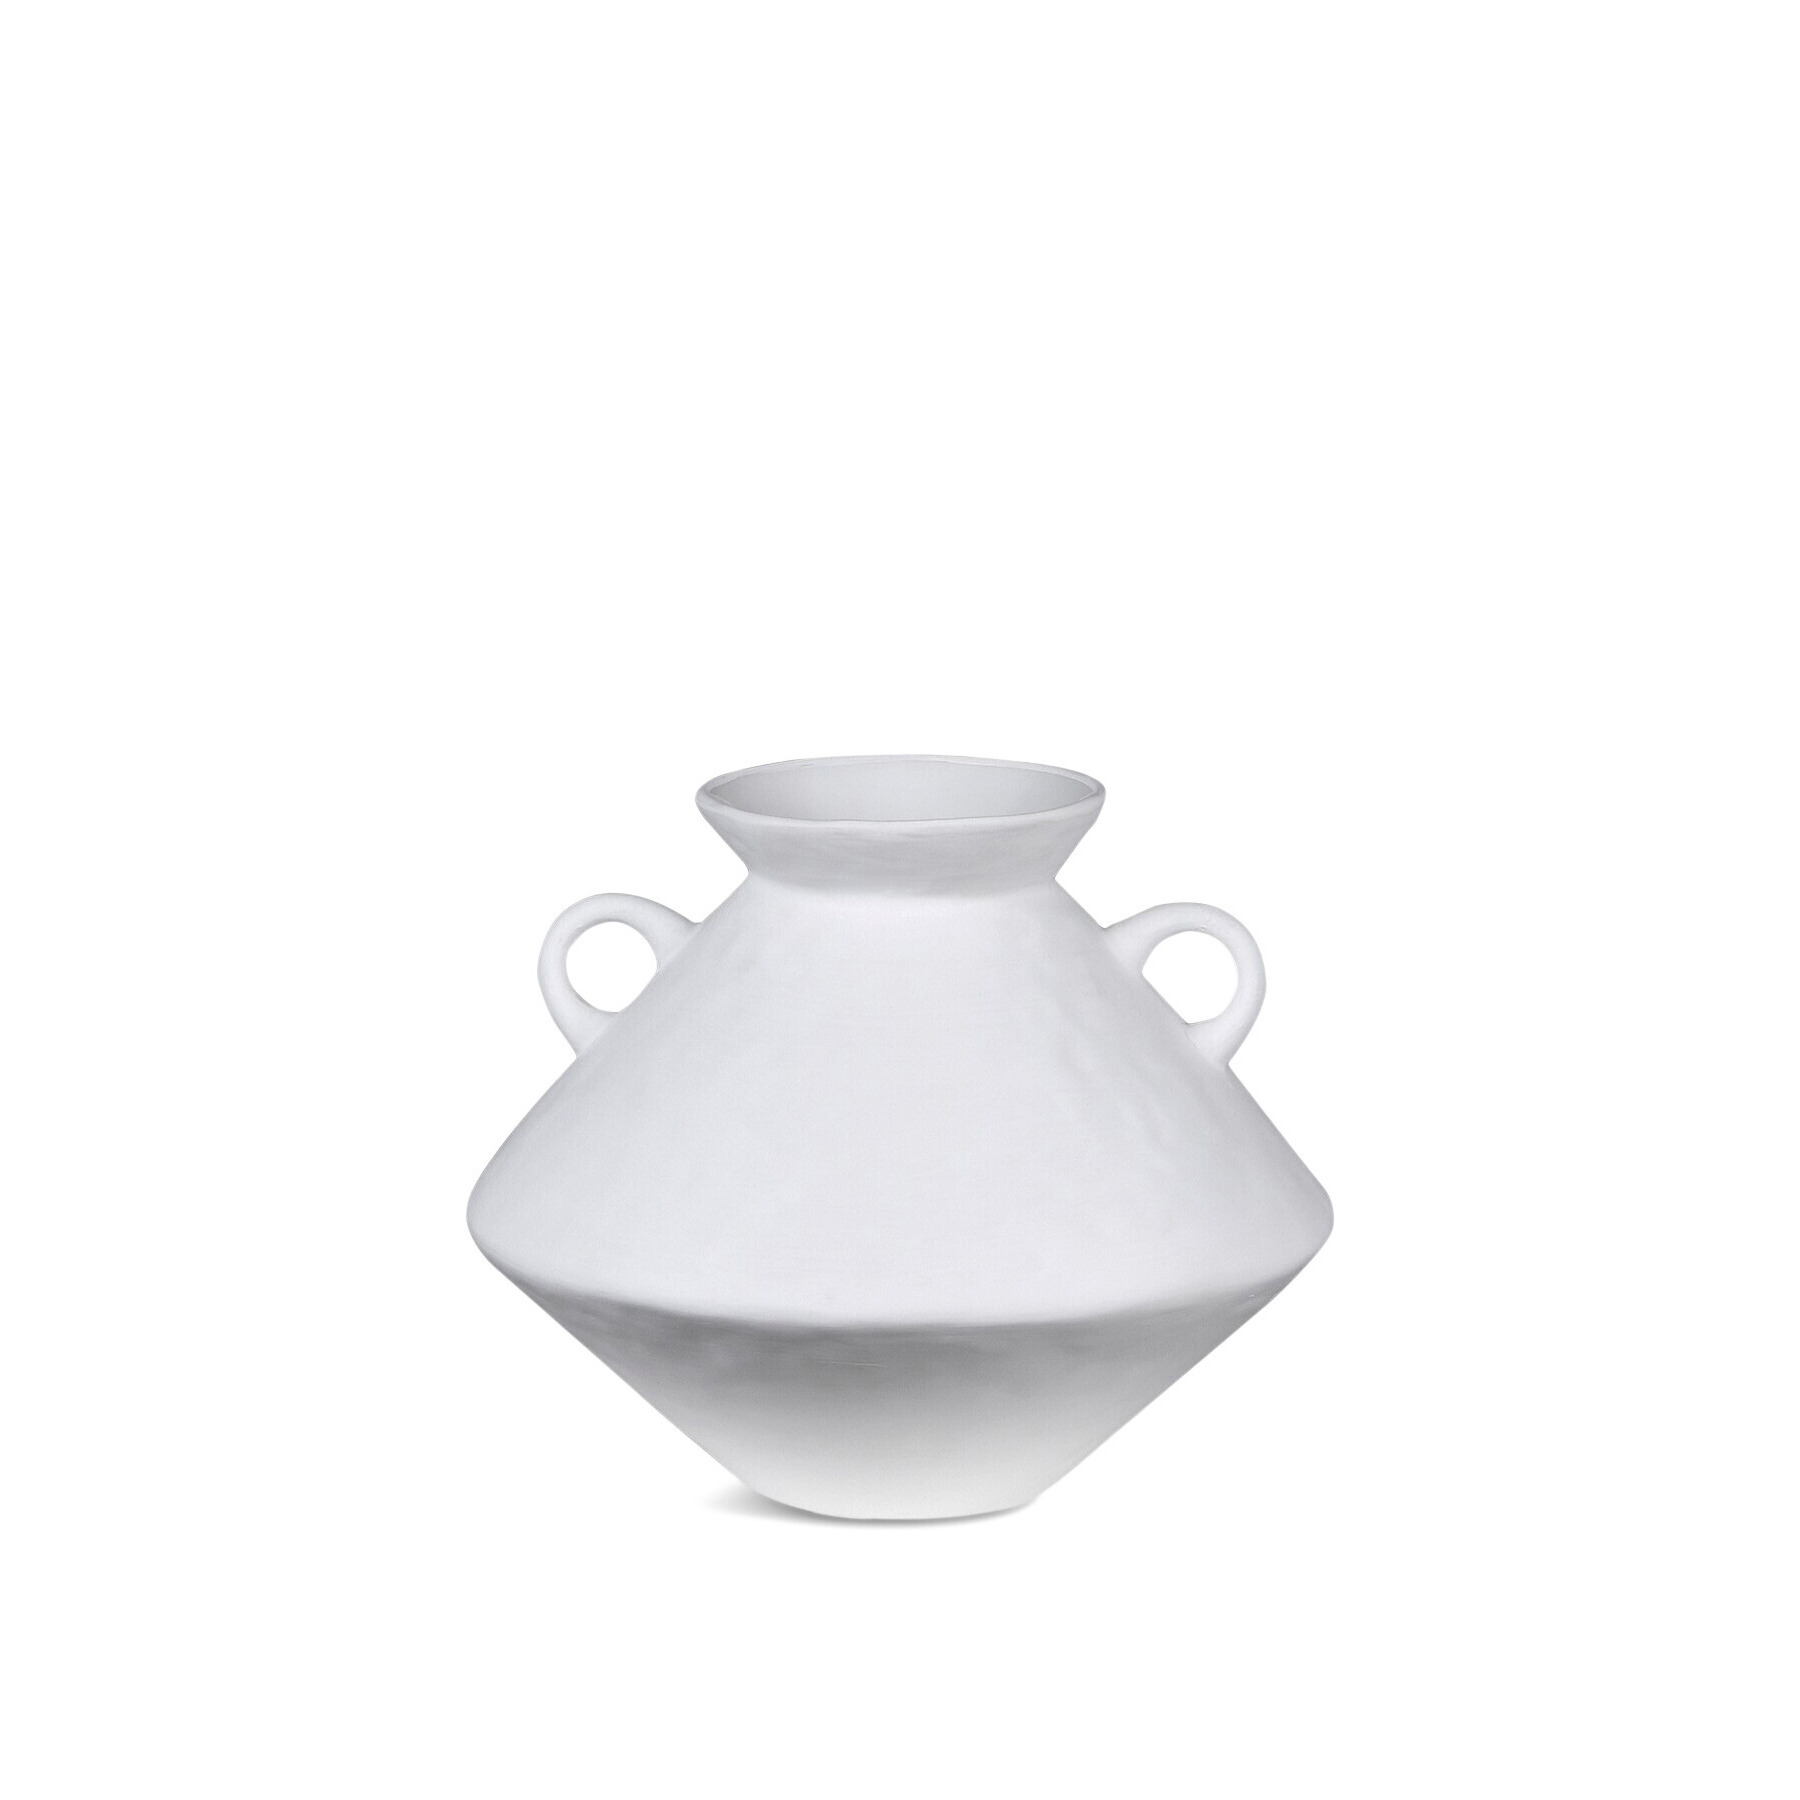 H&D Décor Small Bulbous Jar Vase White